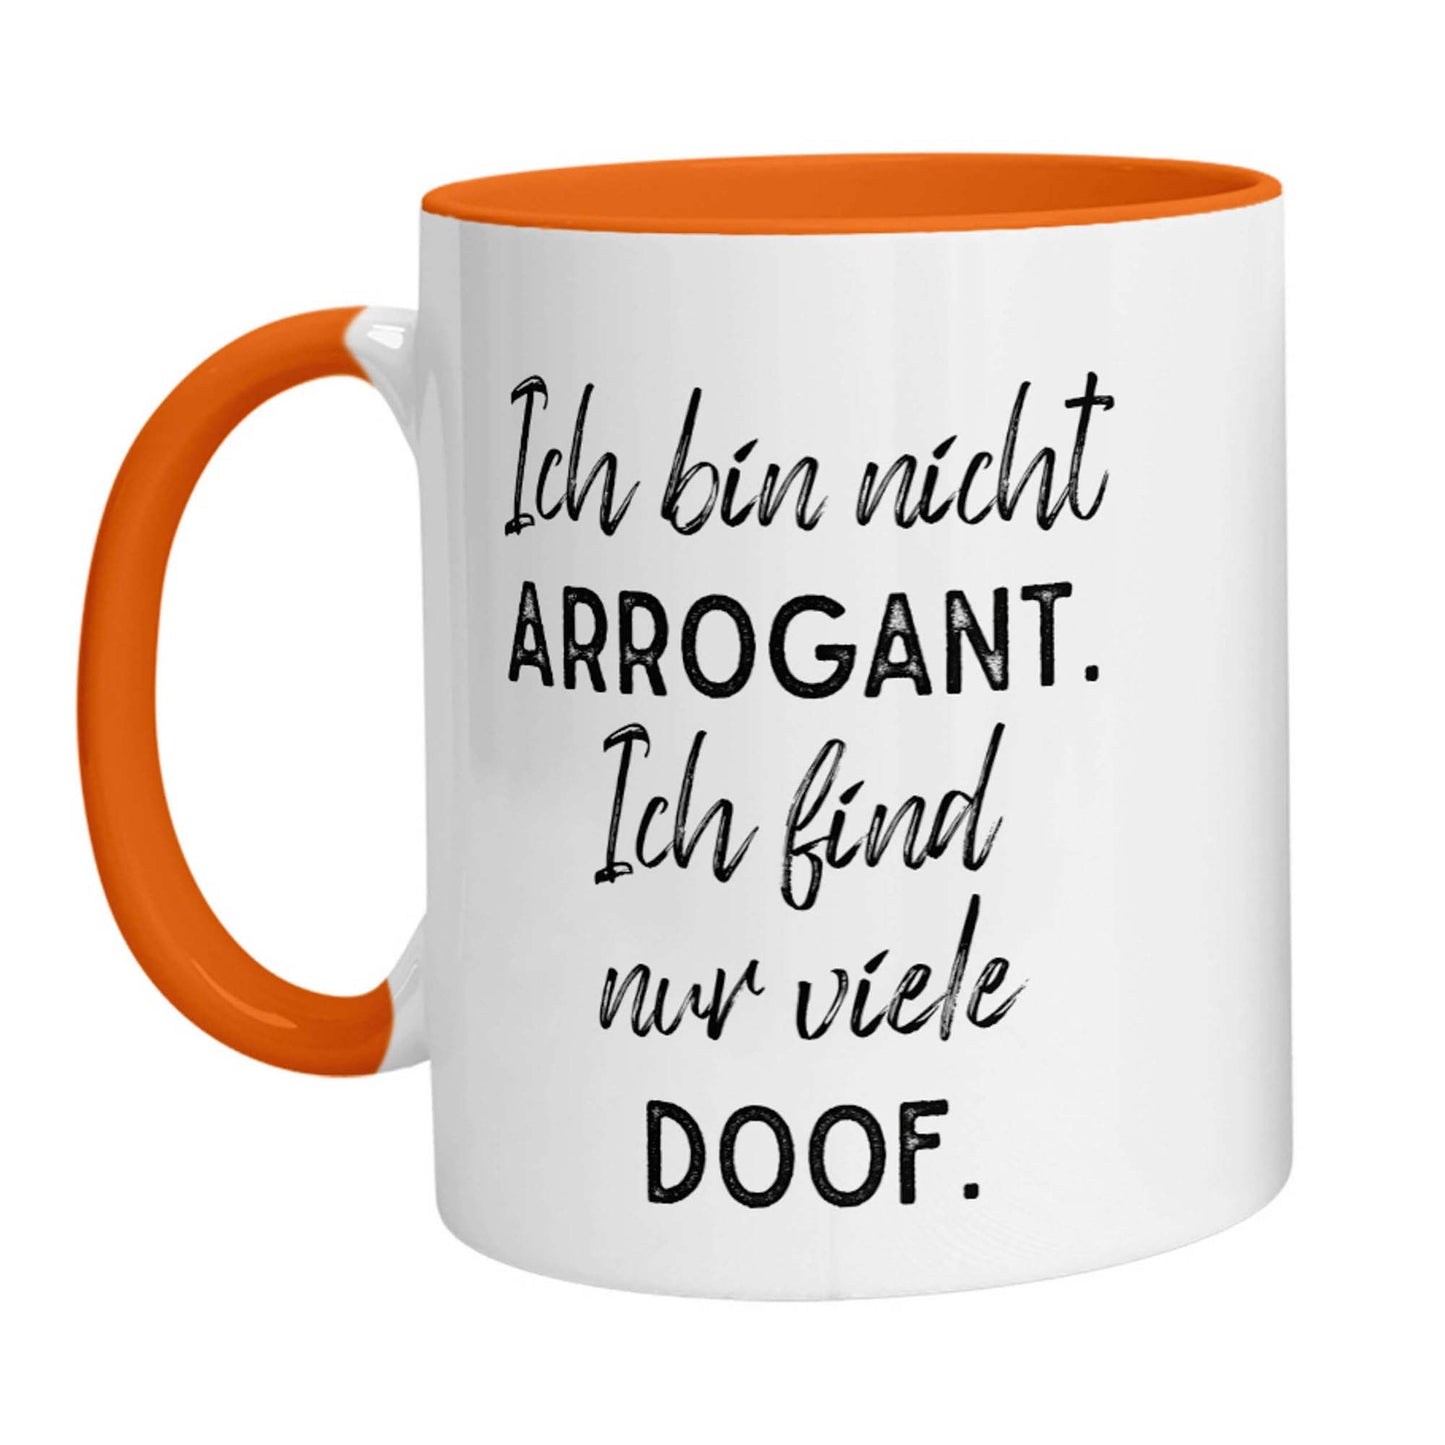 Tasse - Ich bin nicht arrogant. Ich finde nur viele doof.